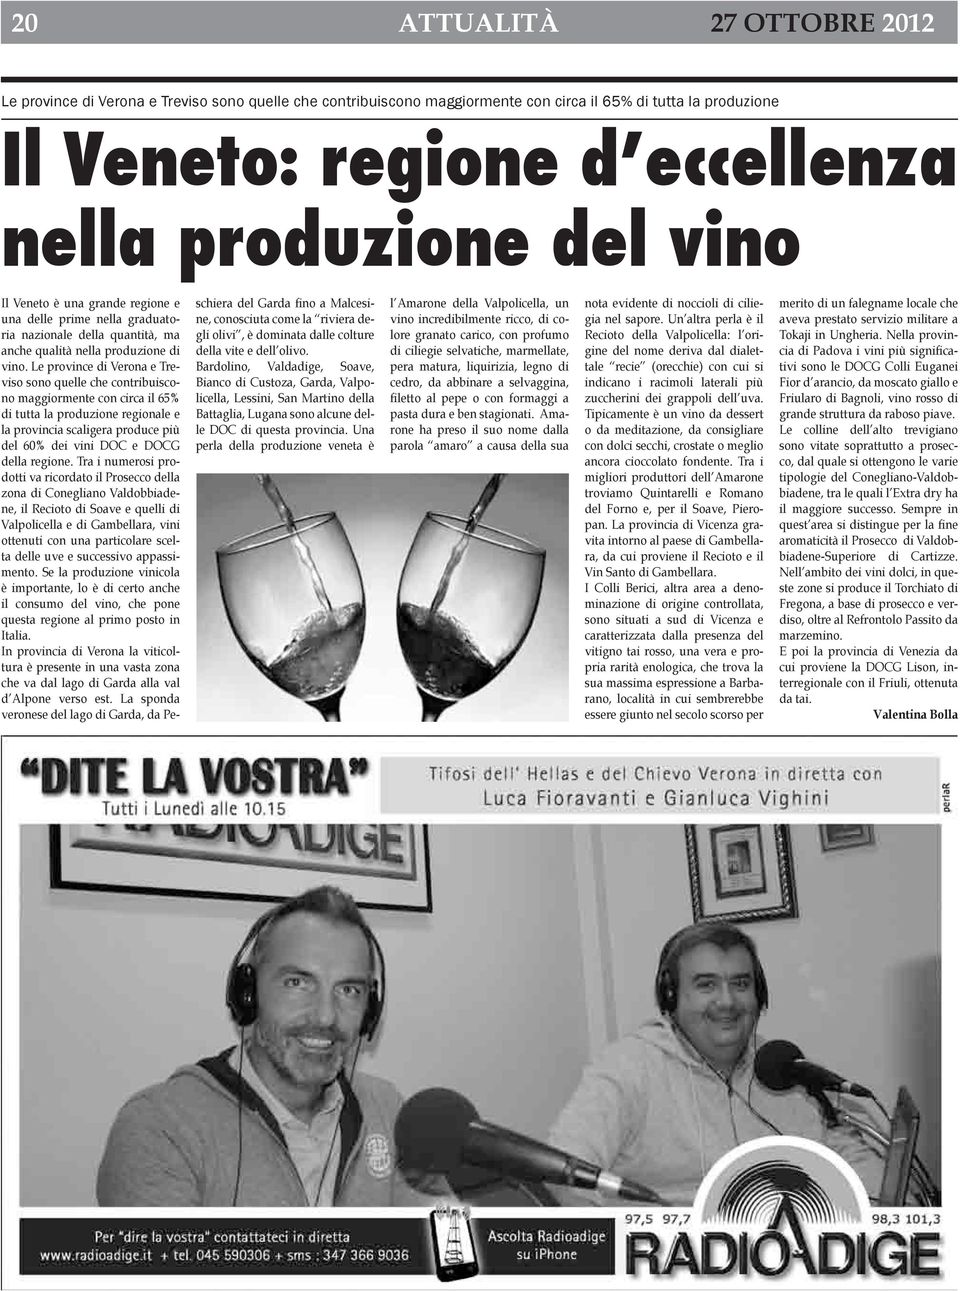 Le province di Verona e Treviso sono quelle che contribuiscono maggiormente con circa il 65% di tutta la produzione regionale e la provincia scaligera produce più del 60% dei vini DOC e DOCG della